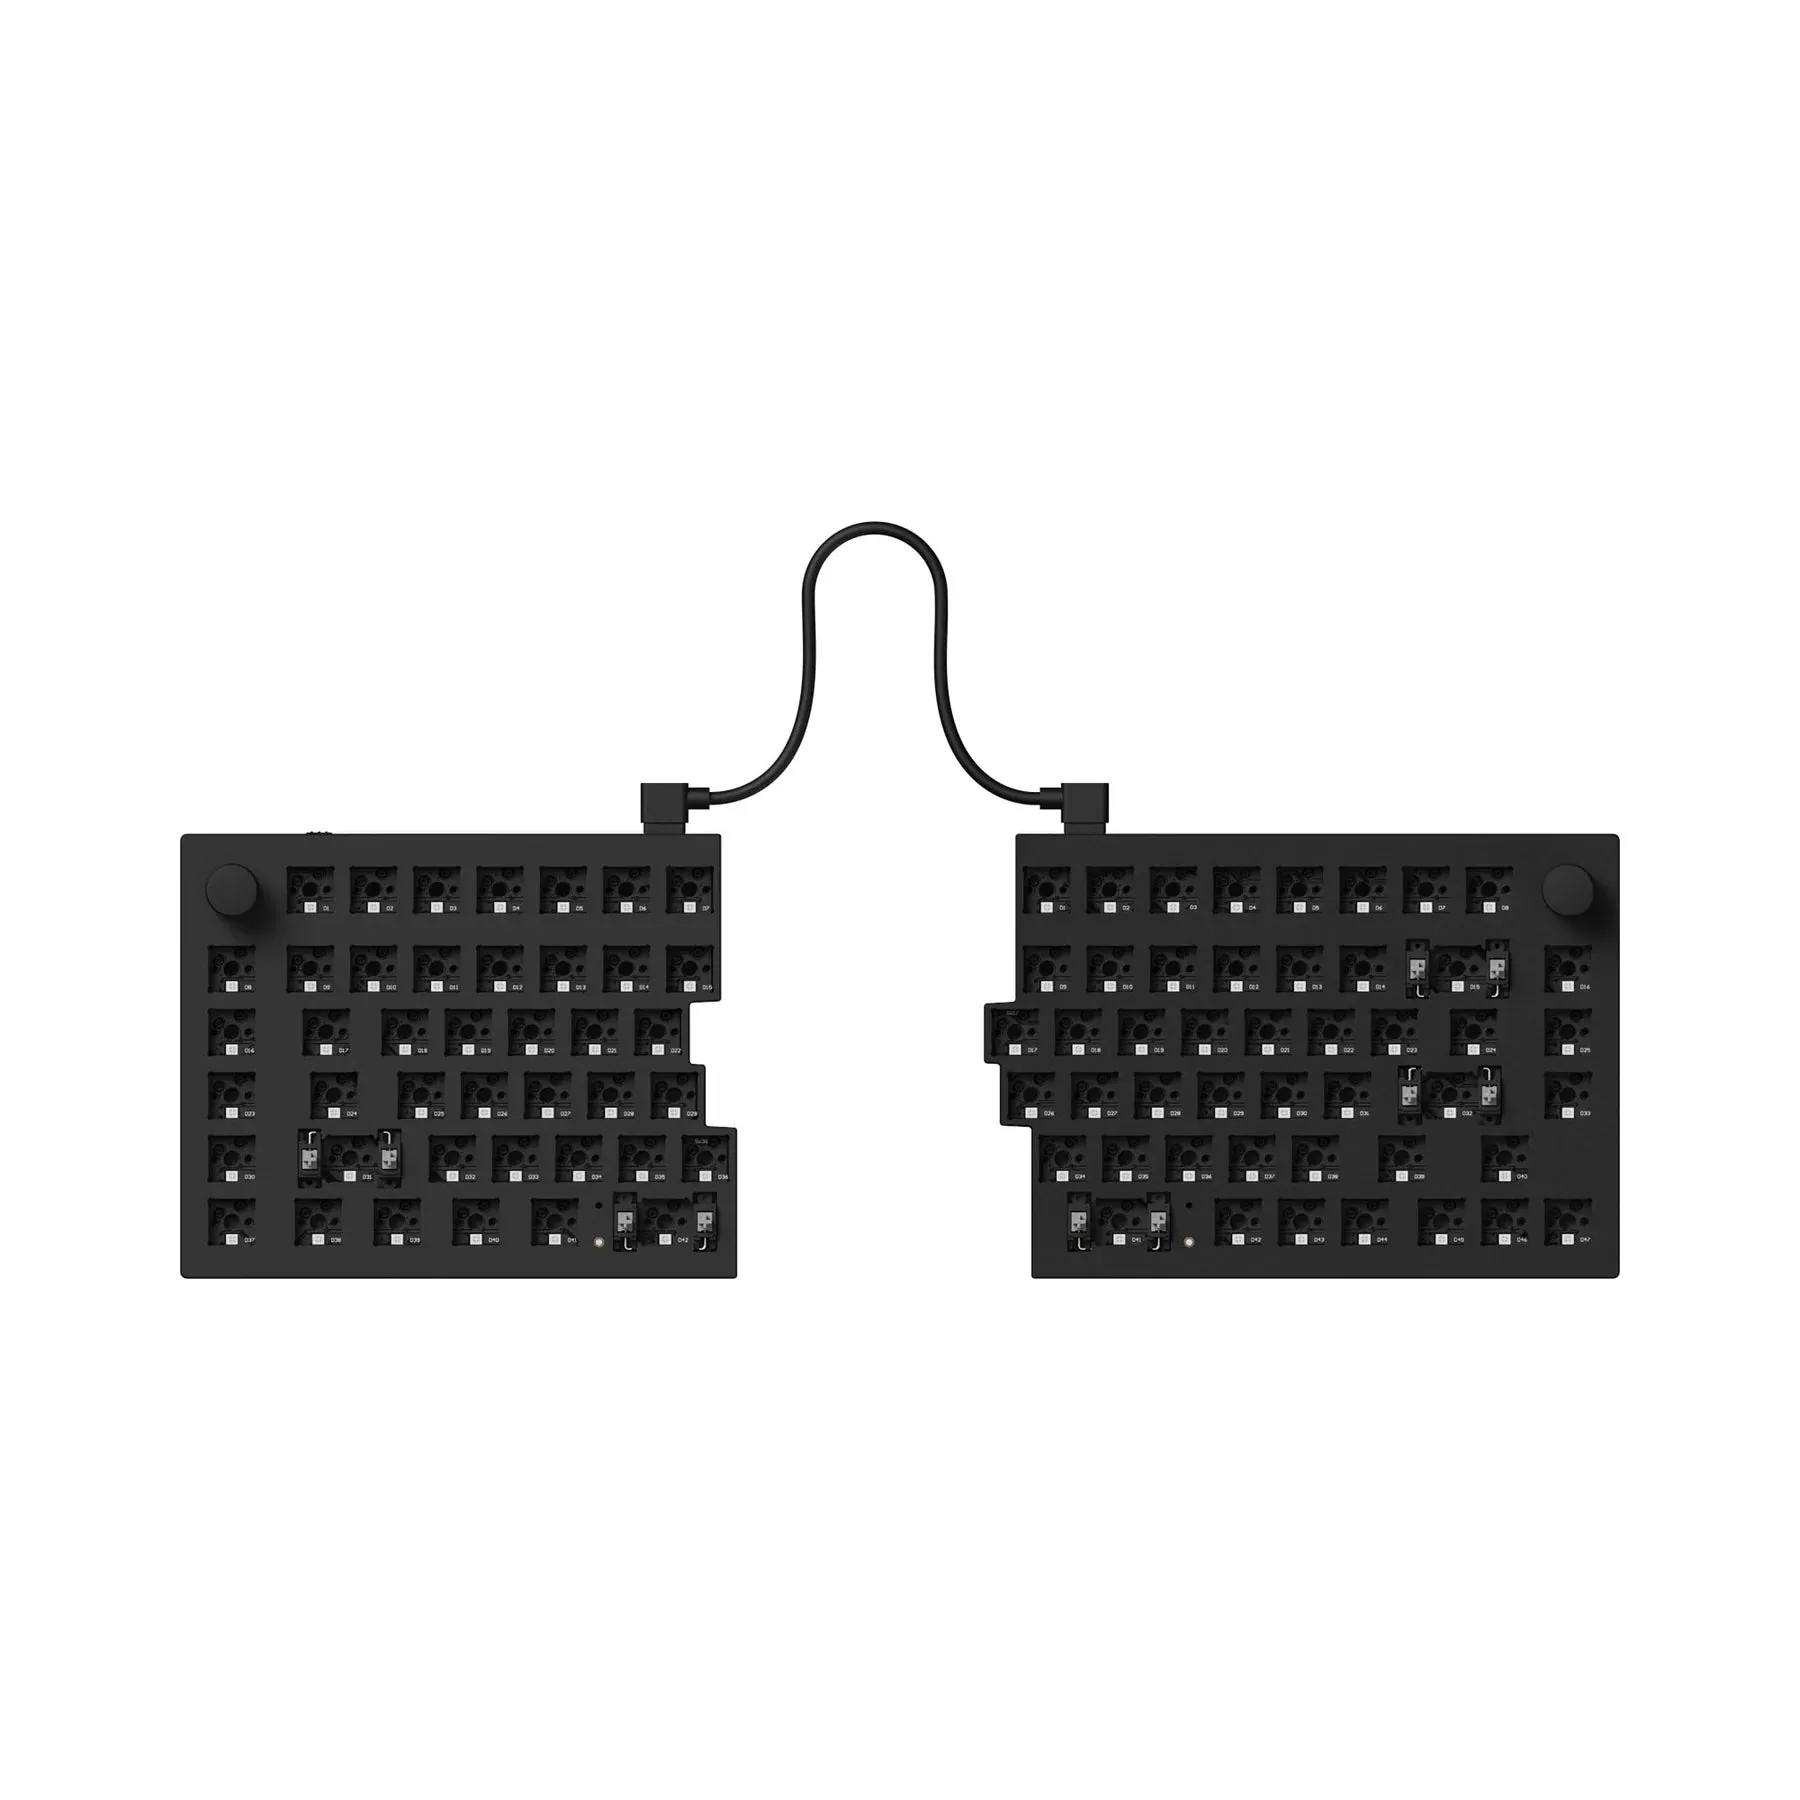 Image for Keychron Q11 QMK Split Keyboard